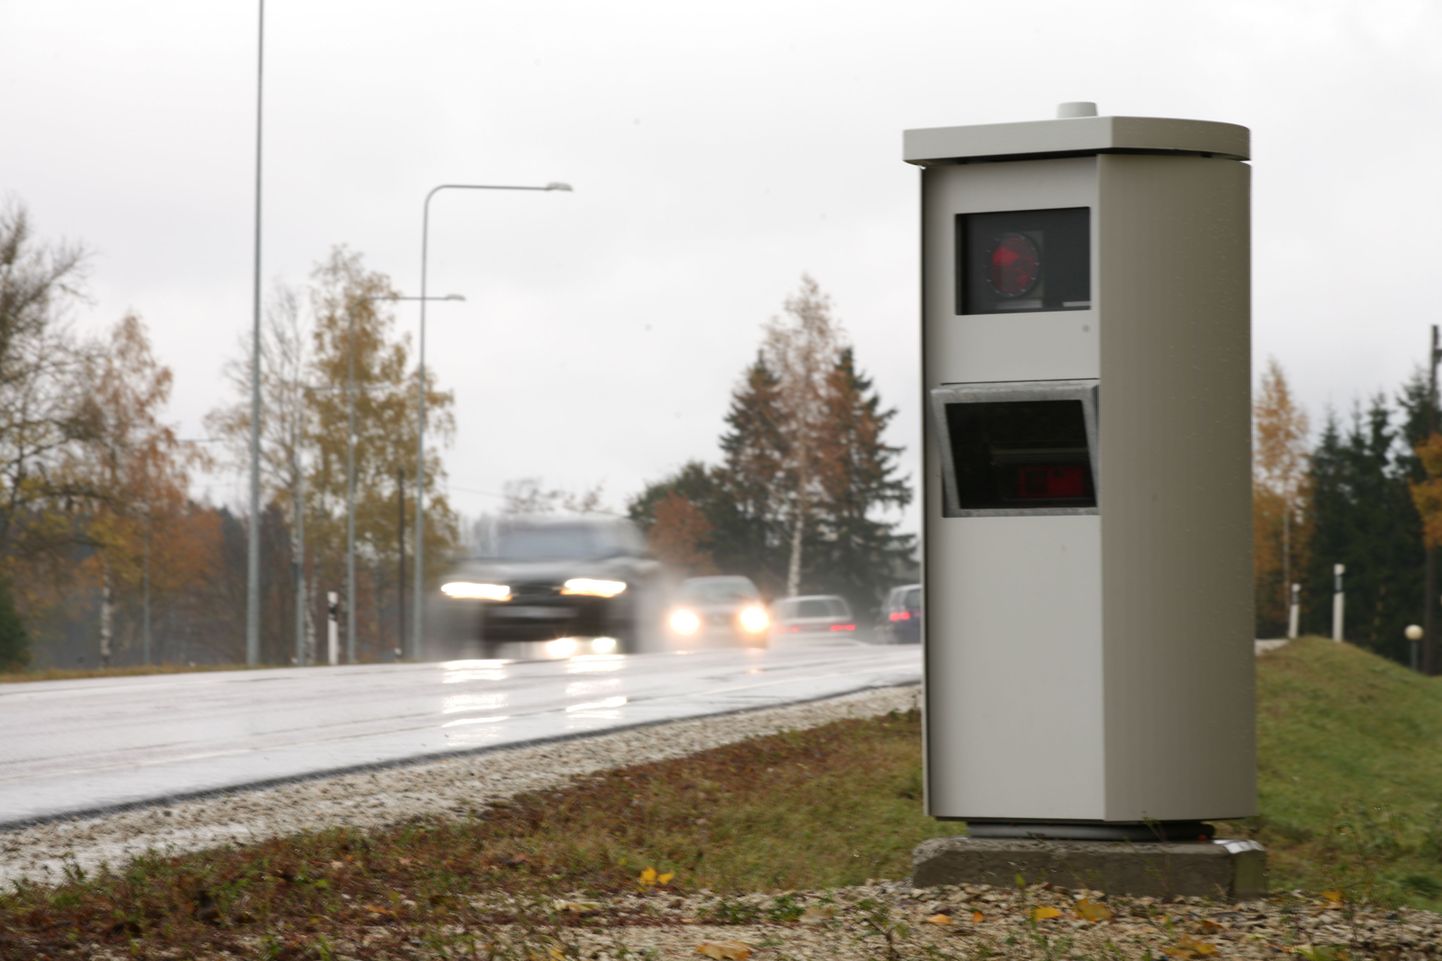 Камеры для измерения скорости появились сначала на шоссе Таллинн-Тарту, а позднее - на шоссе Таллинн-Пярну.